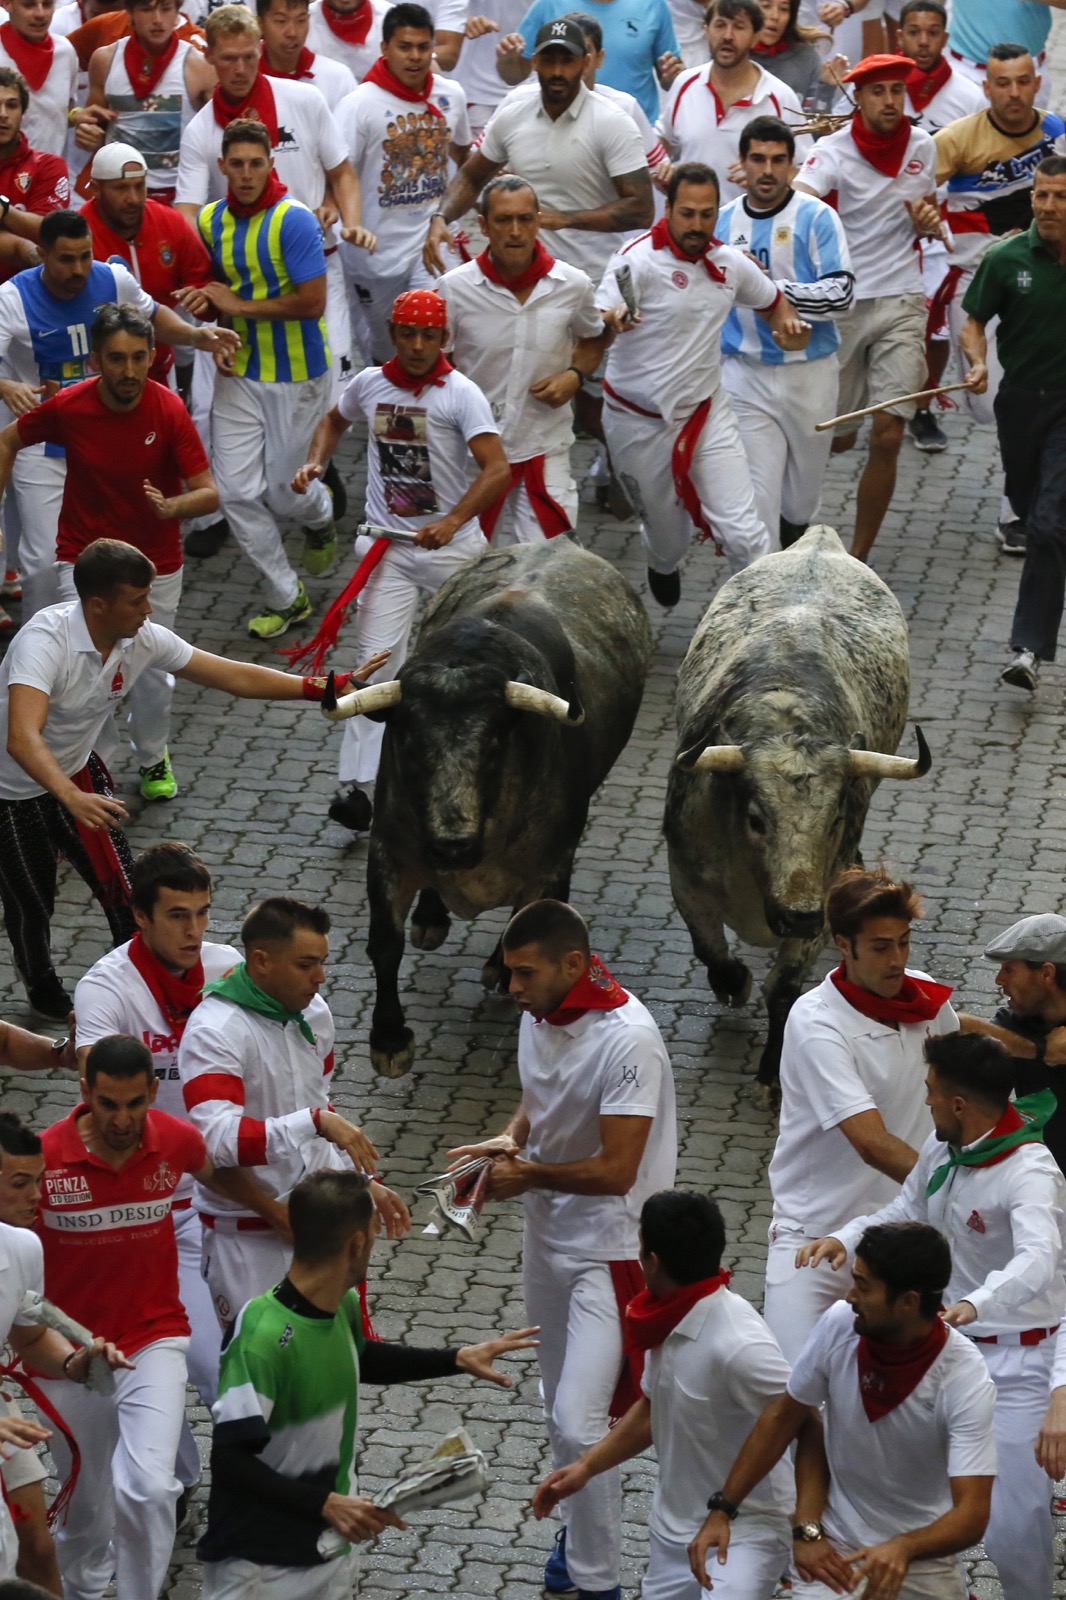 The running of the bulls Pamplona